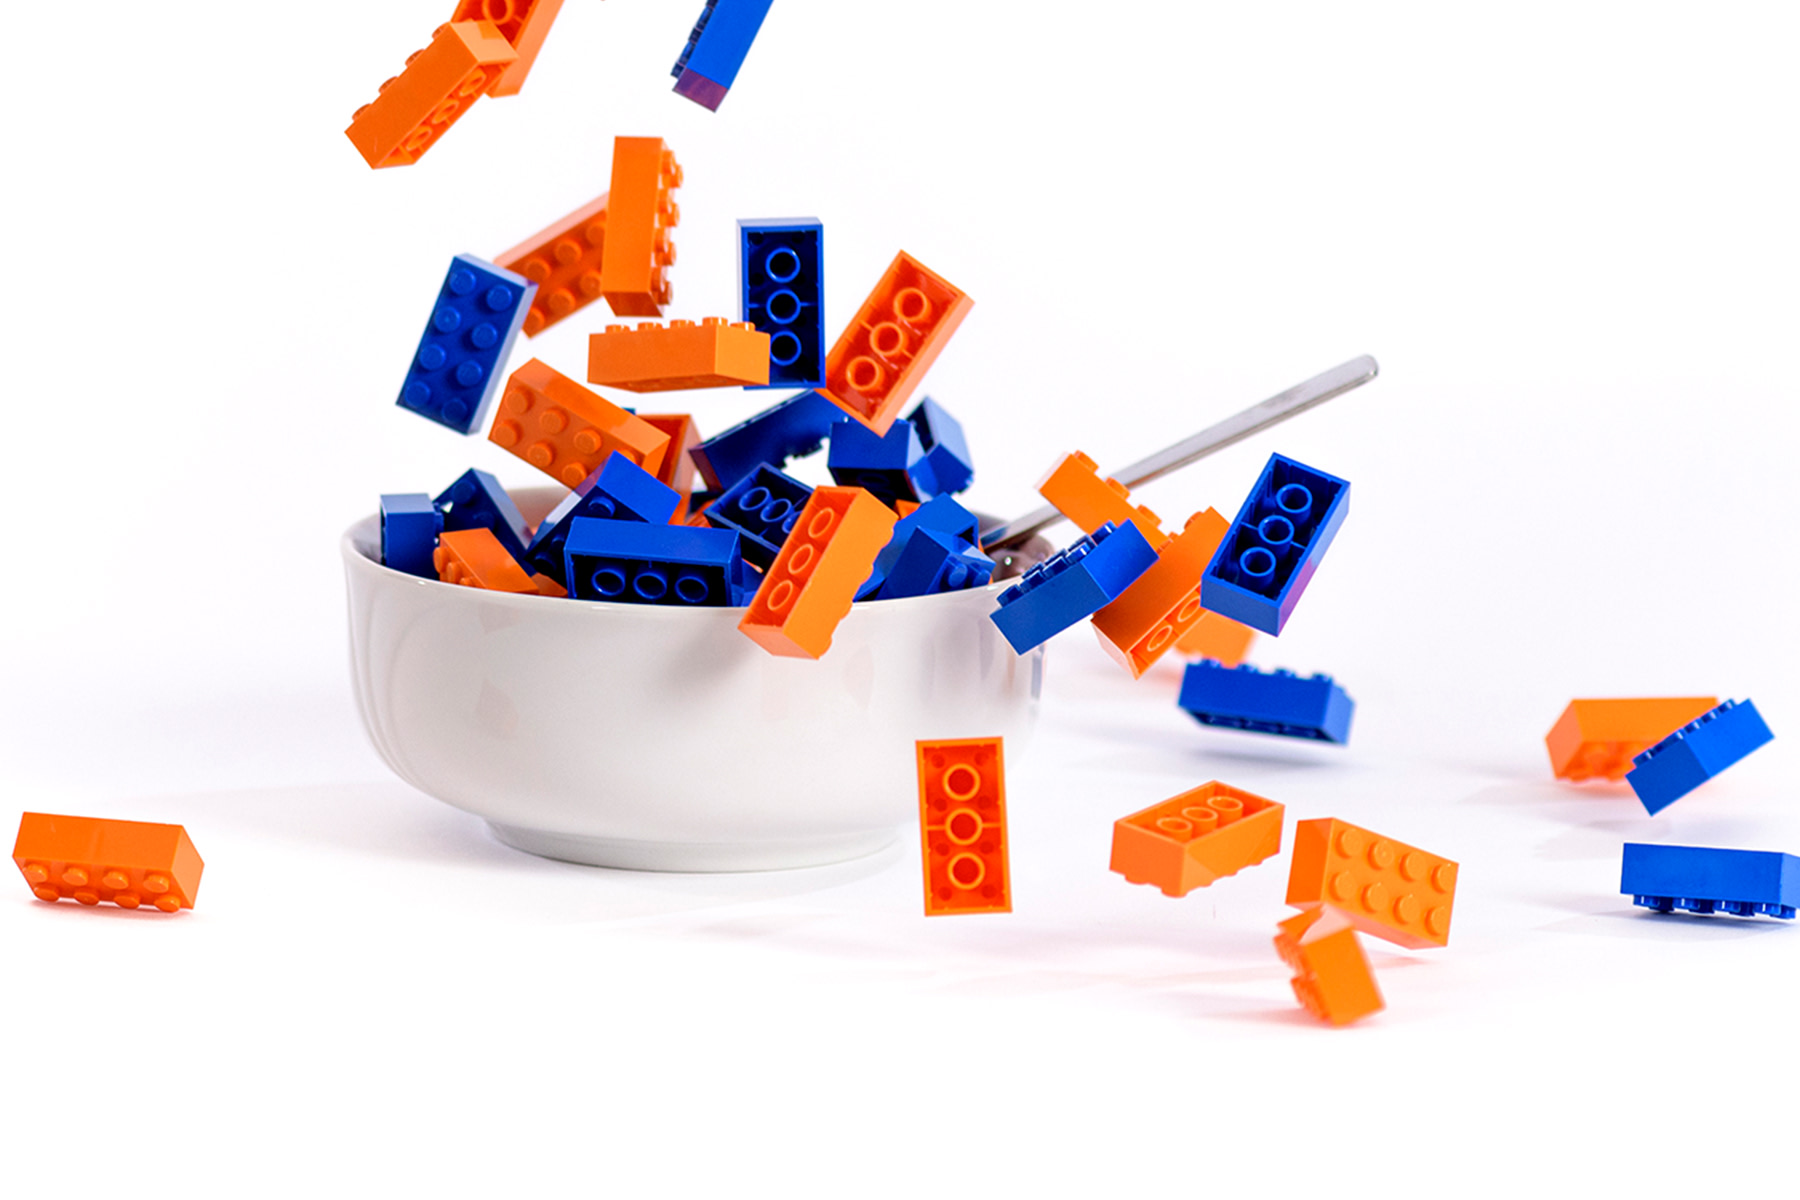 Blauw en oranje lego blokjes in een witte schaal met een lepel